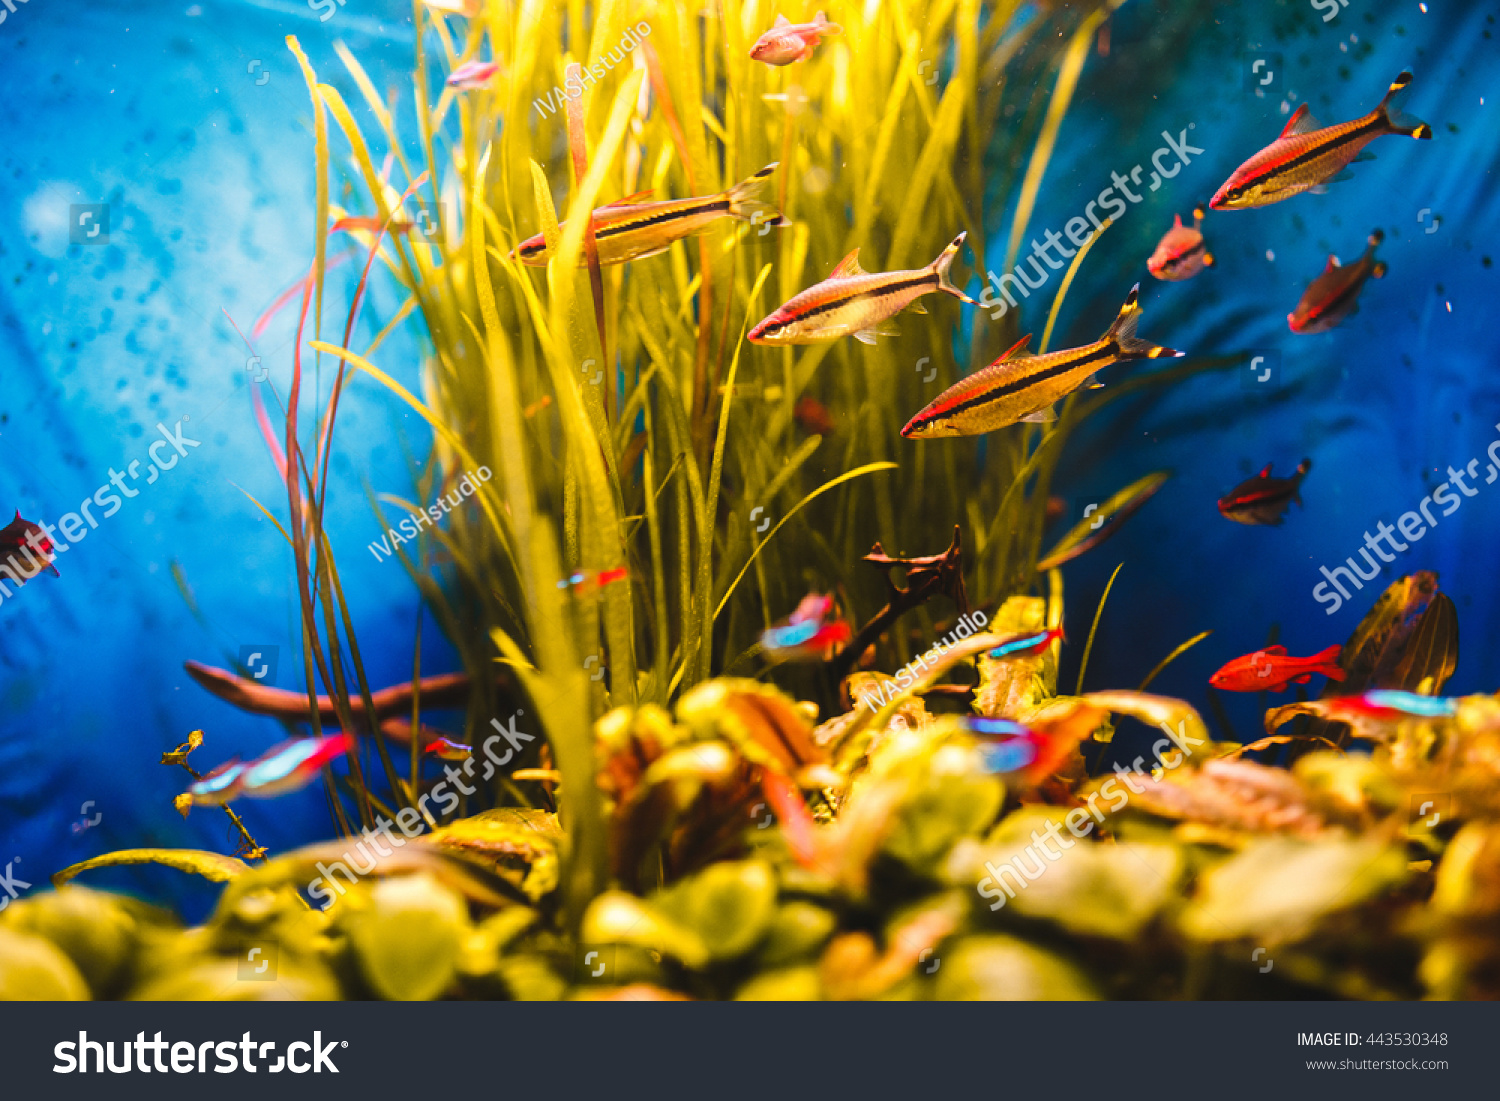 Orange fish swim in a blue aquarium #443530348